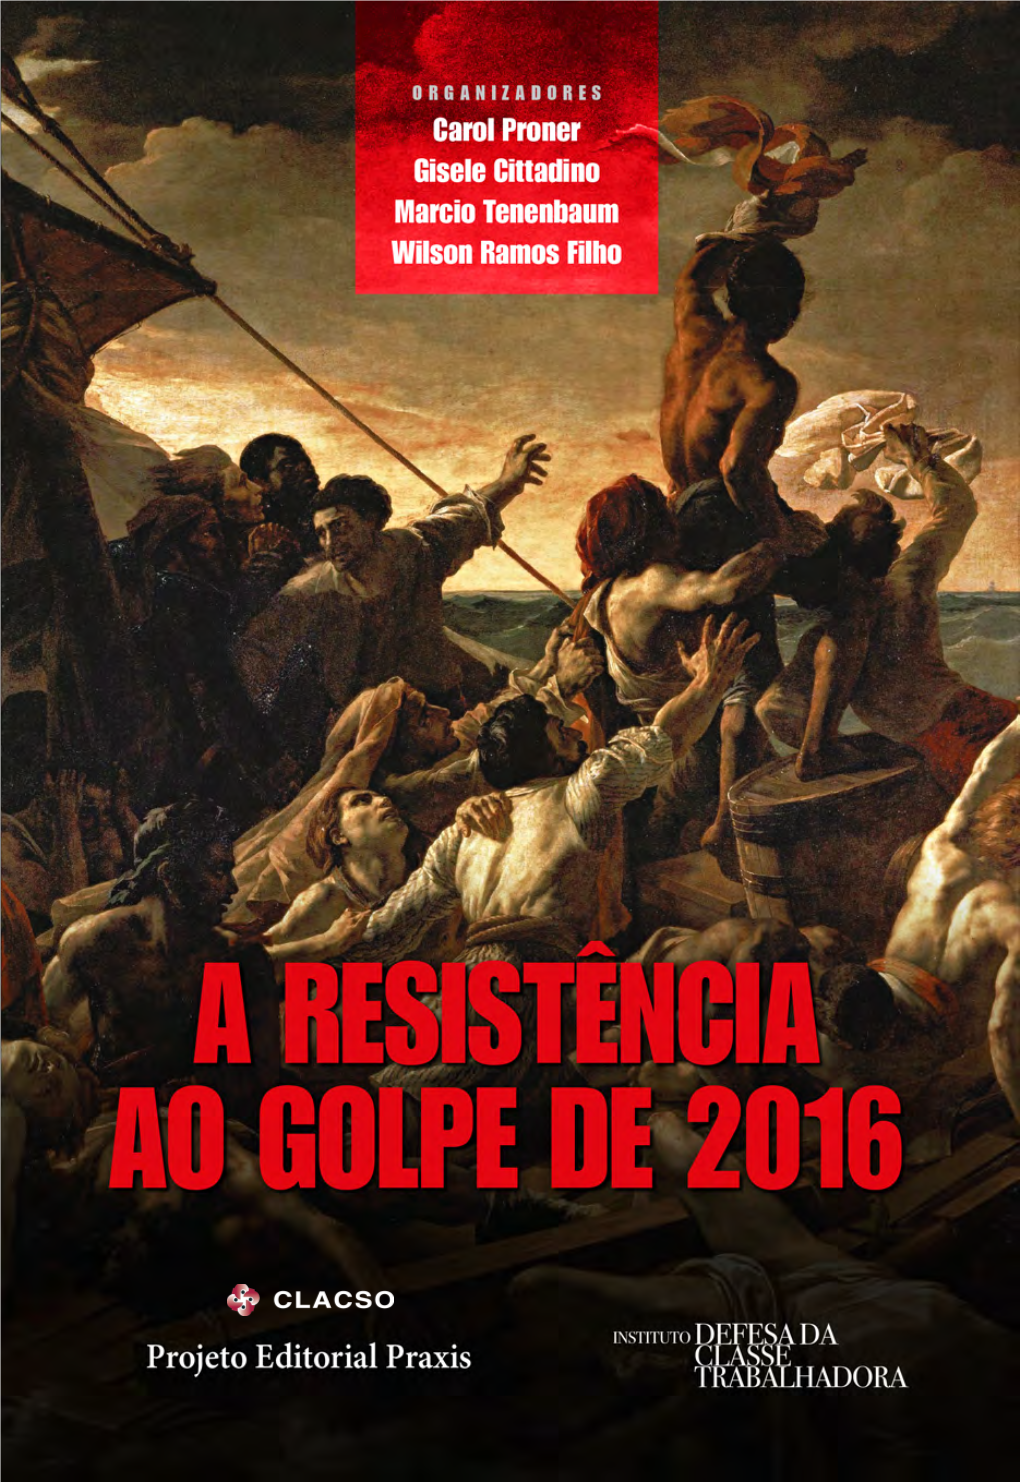 A RESISTÊNCIA AO GOLPE De 2016 Copyright© Projeto Editorial Praxis, 2016